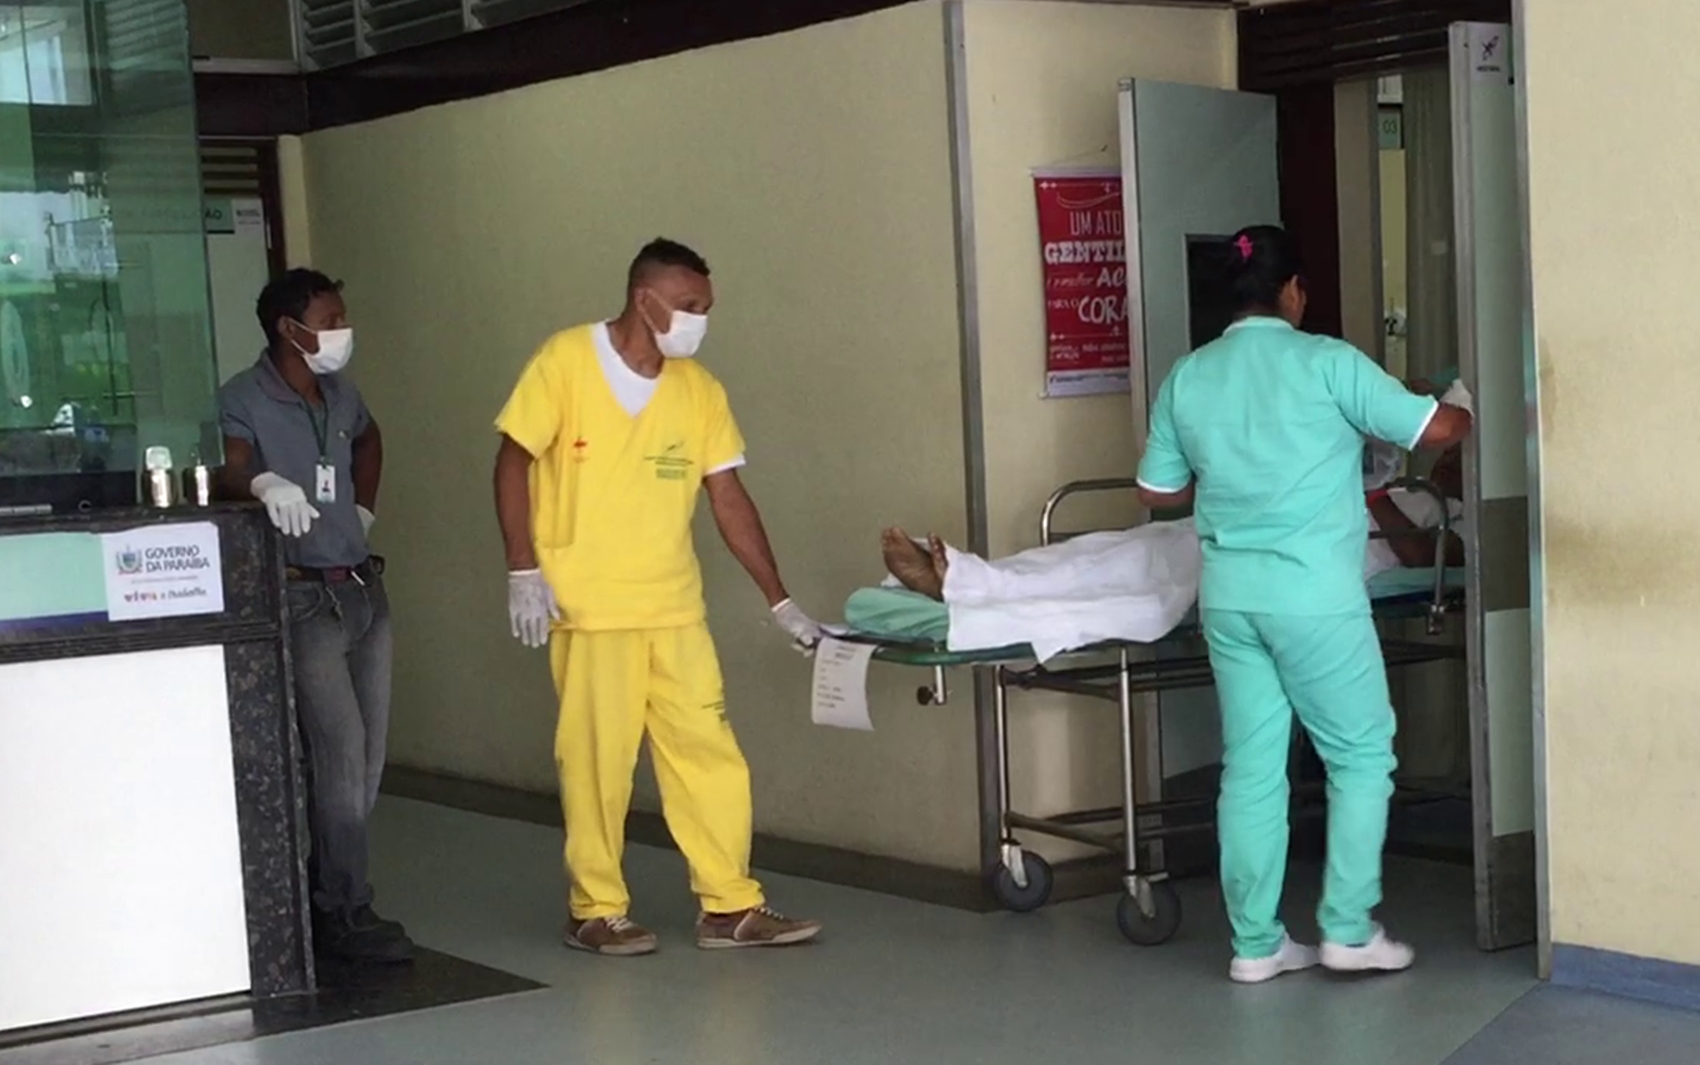 Jovens foram atendidos no Hospital de Trauma de João Pessoa após serem baleados em Mandacaru (Foto: Walter Paparazzo)